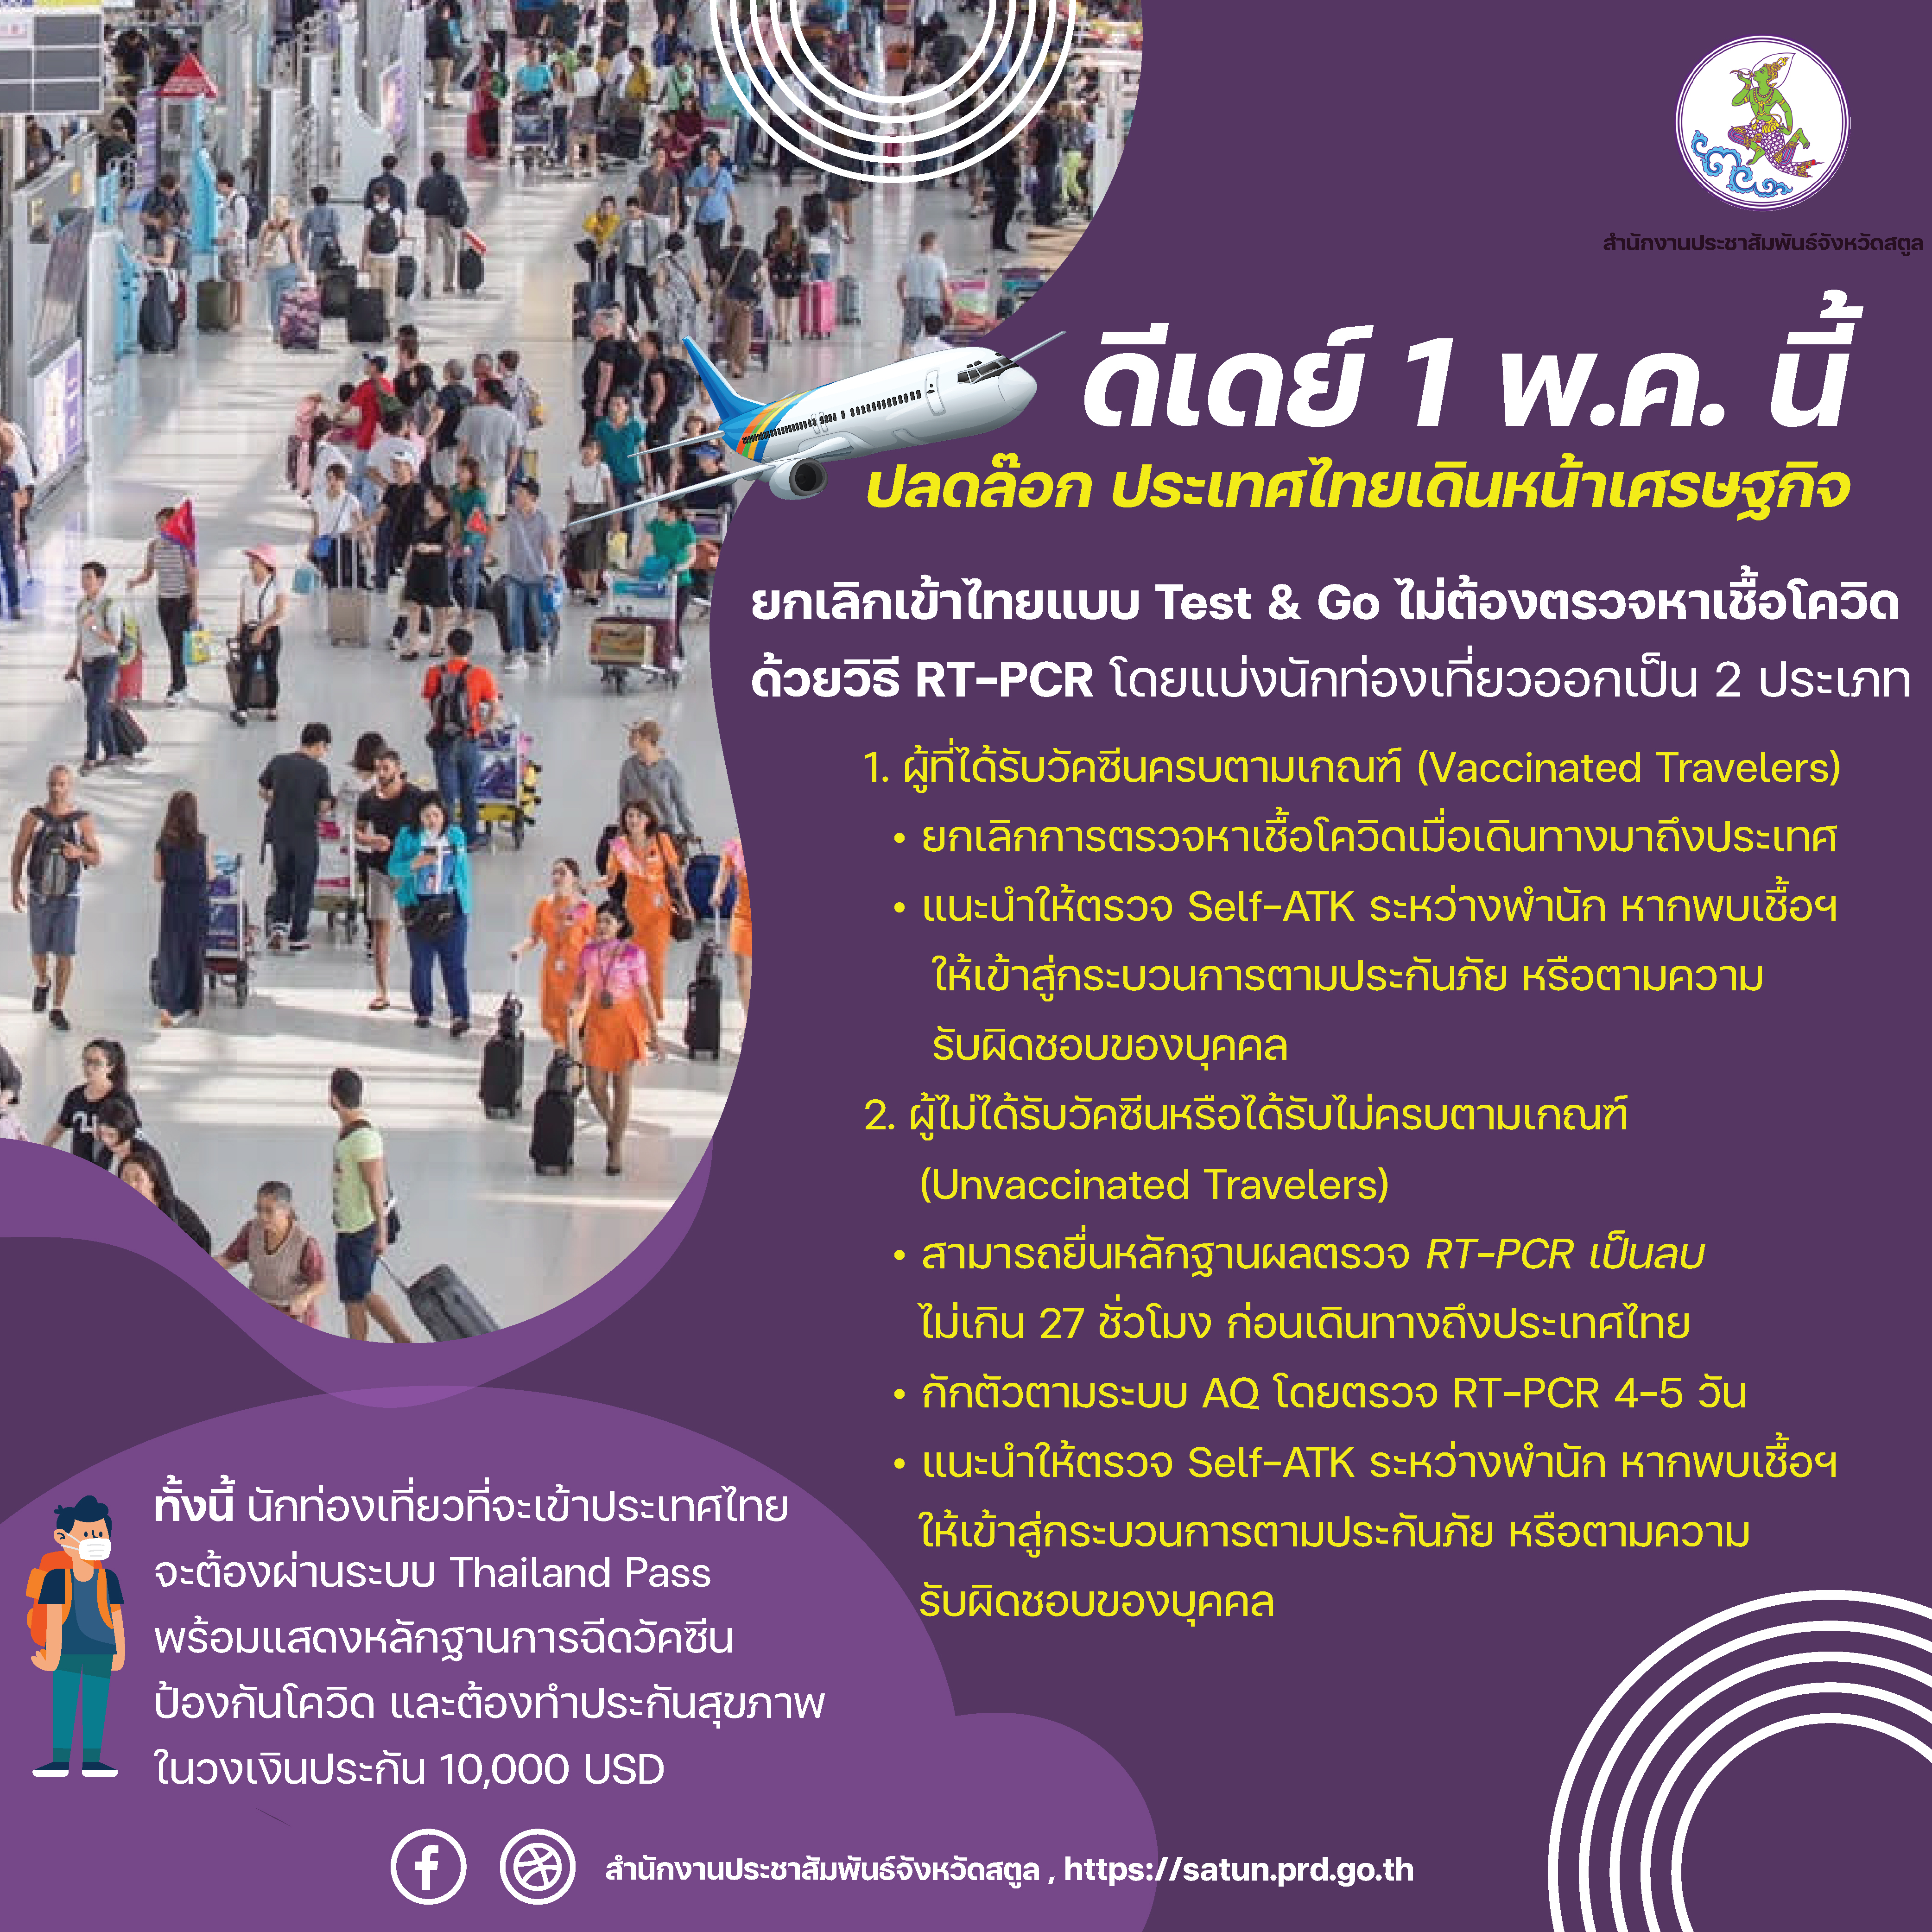 ดีเดย์ 1 พ.ค.นี้ ปลดล็อก ประเทศไทย เดินหน้าเศรษฐกิจ